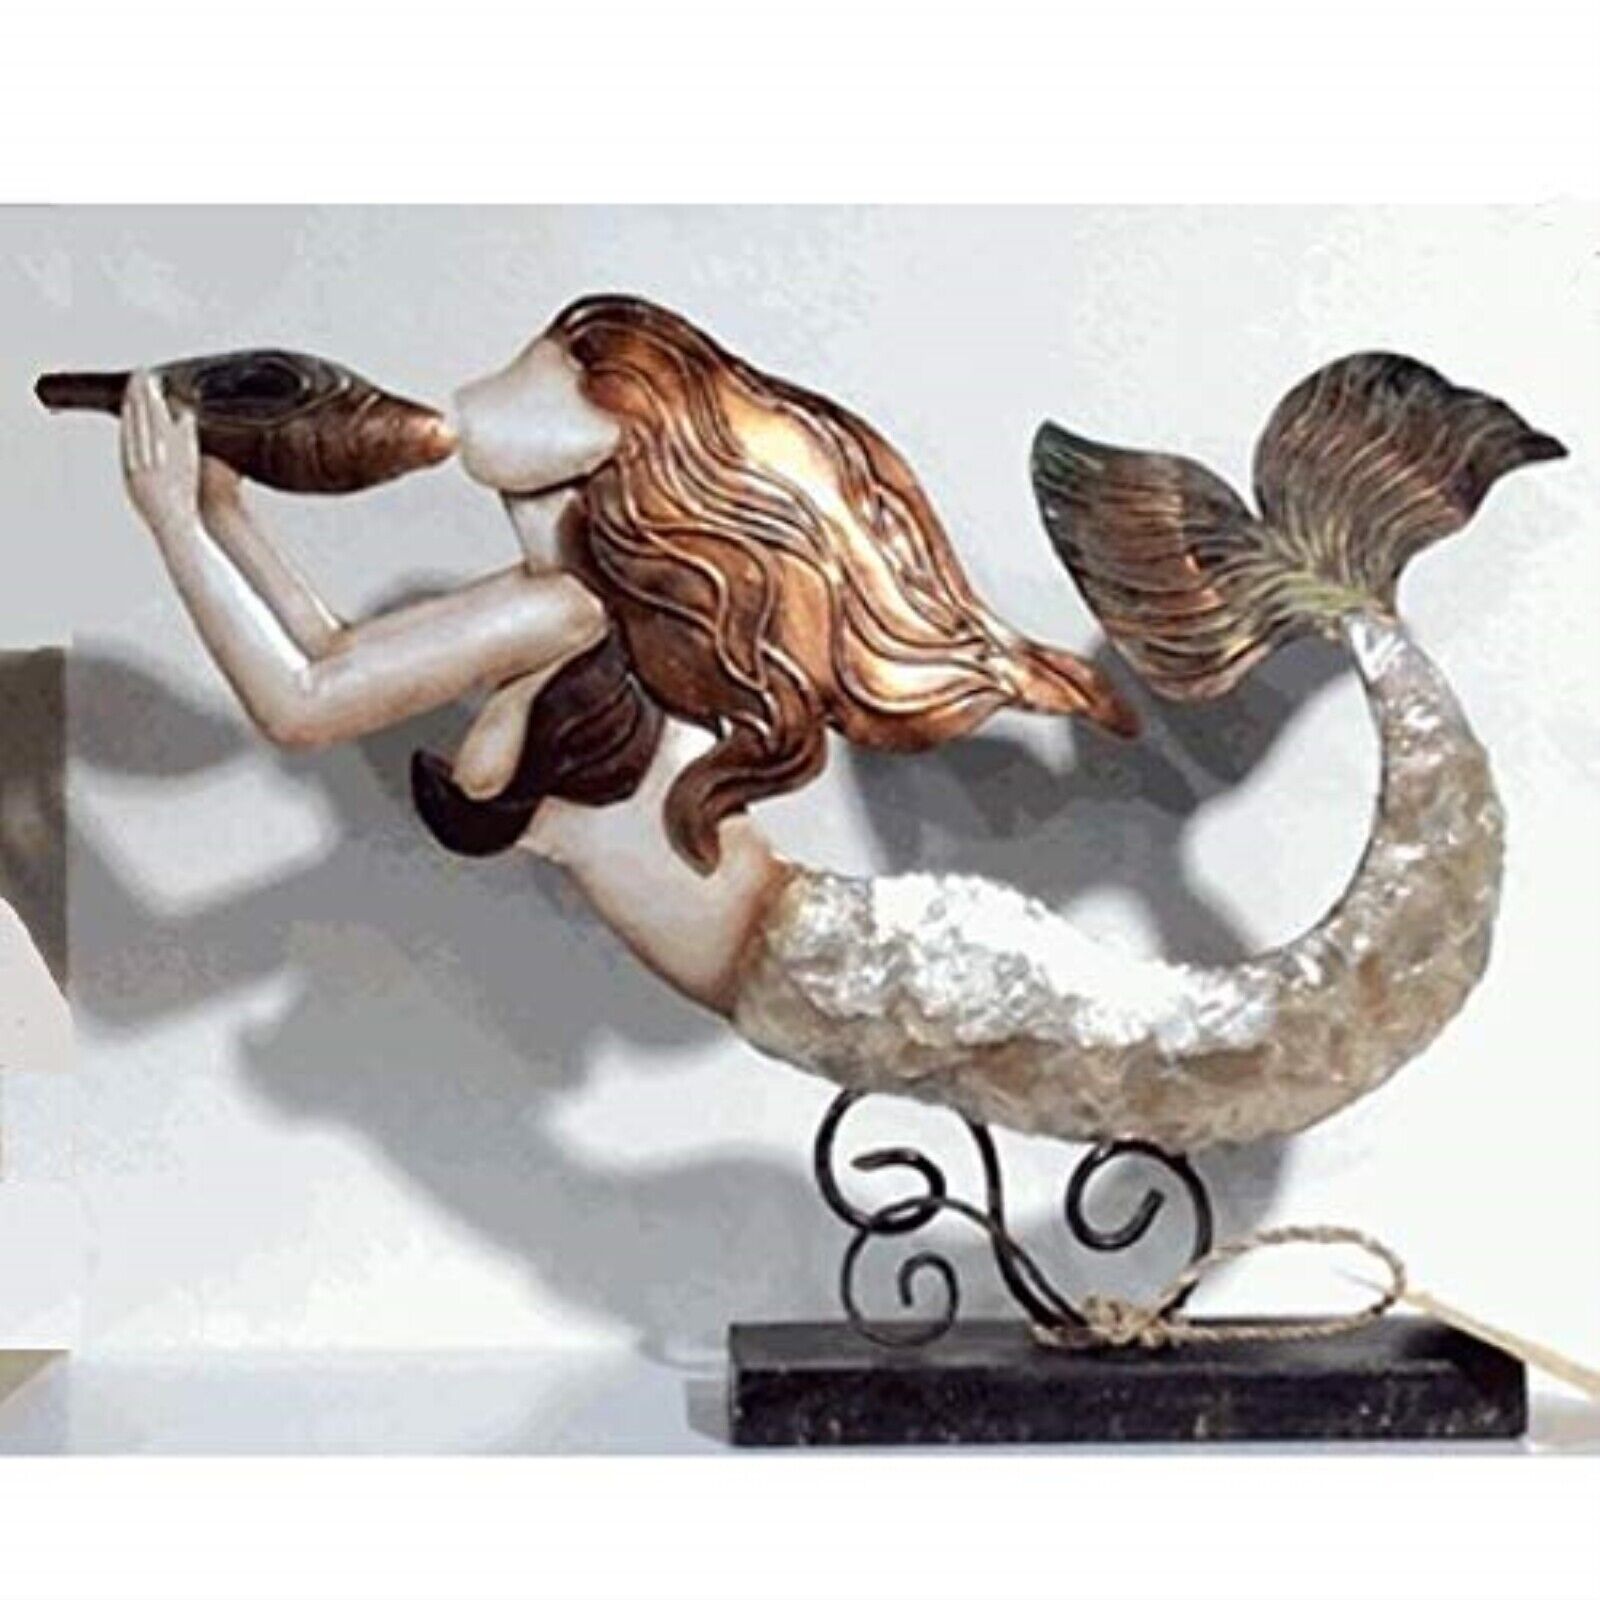 Elegant Mermaid Capiz and Metal Statue Figurine 10.5 x 7.75 Inches